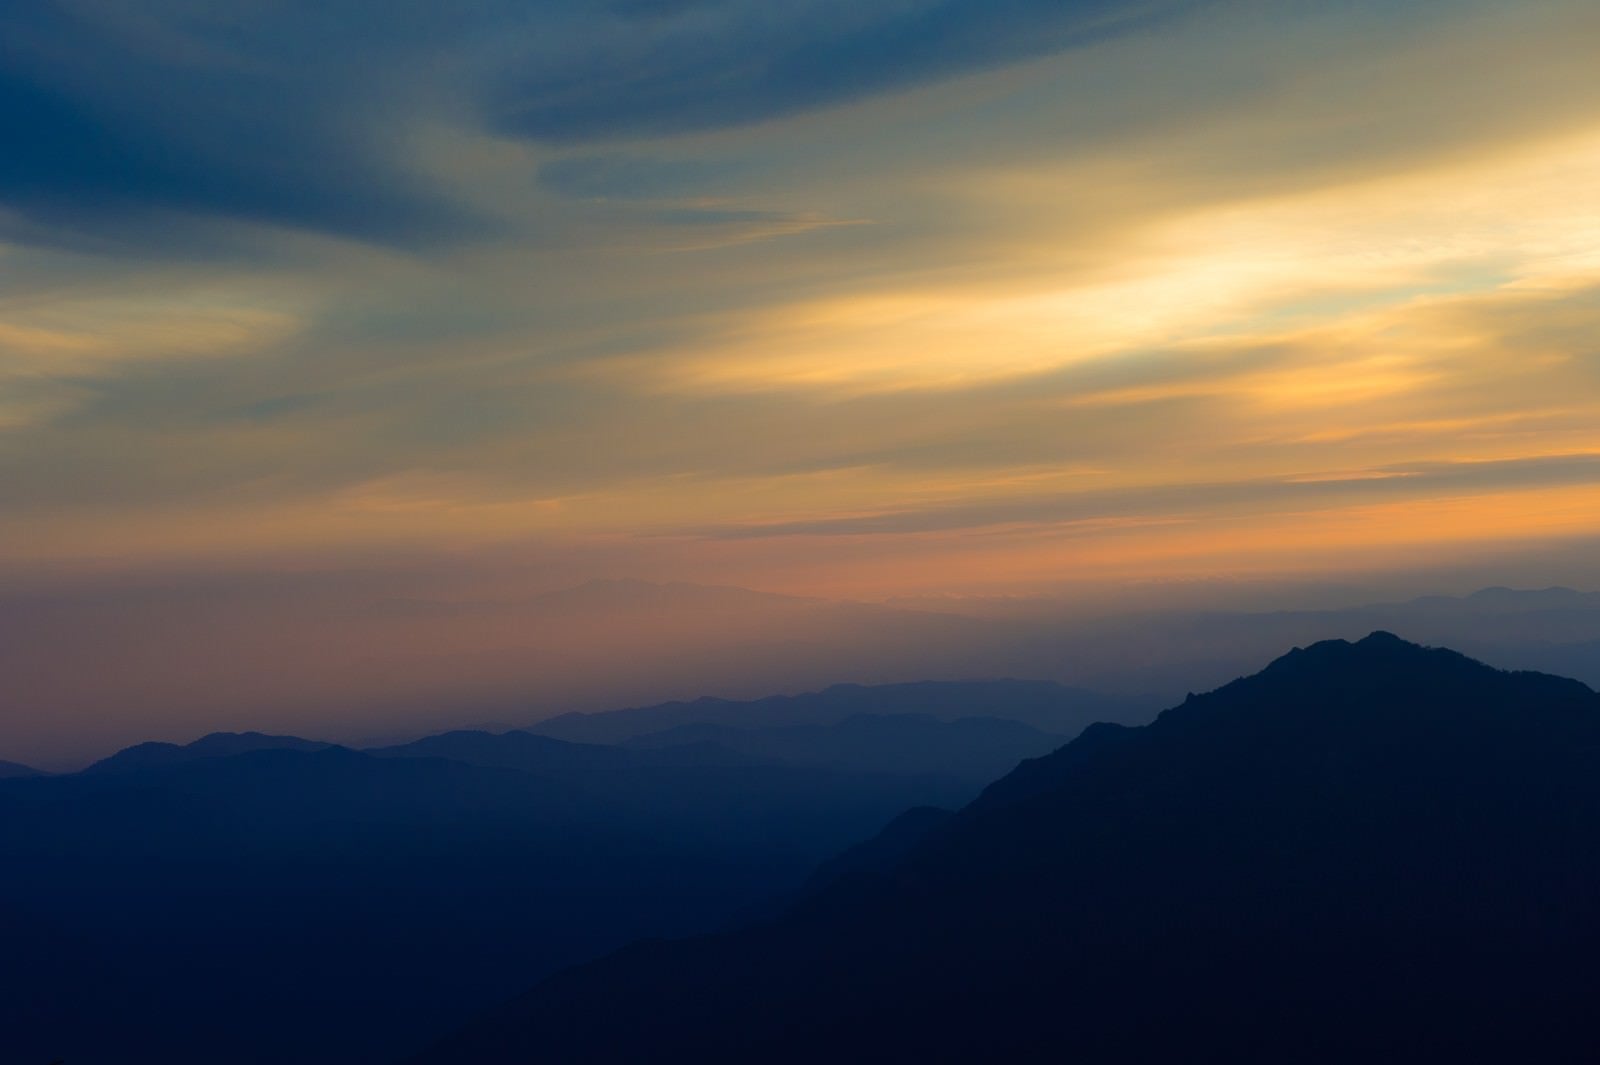 「郷愁感をがある夏の北アルプスの夕暮れと山のシルエット」の写真